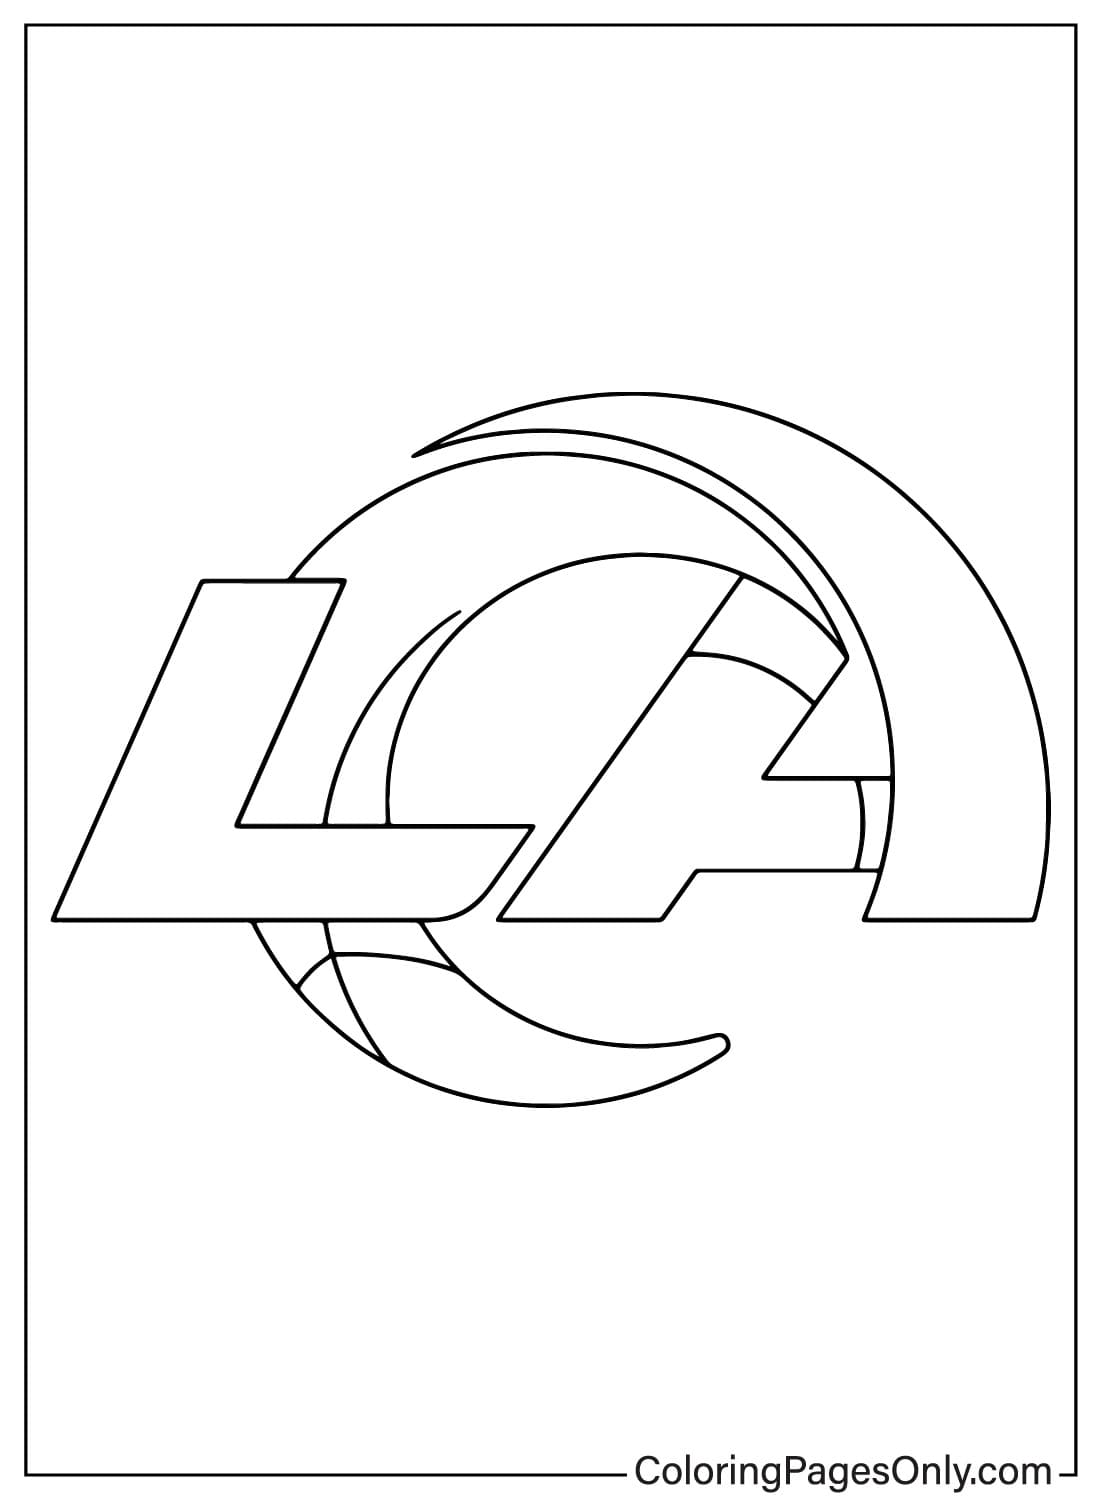 Раскраска с логотипом «Лос-Анджелес Рэмс» из НФЛ